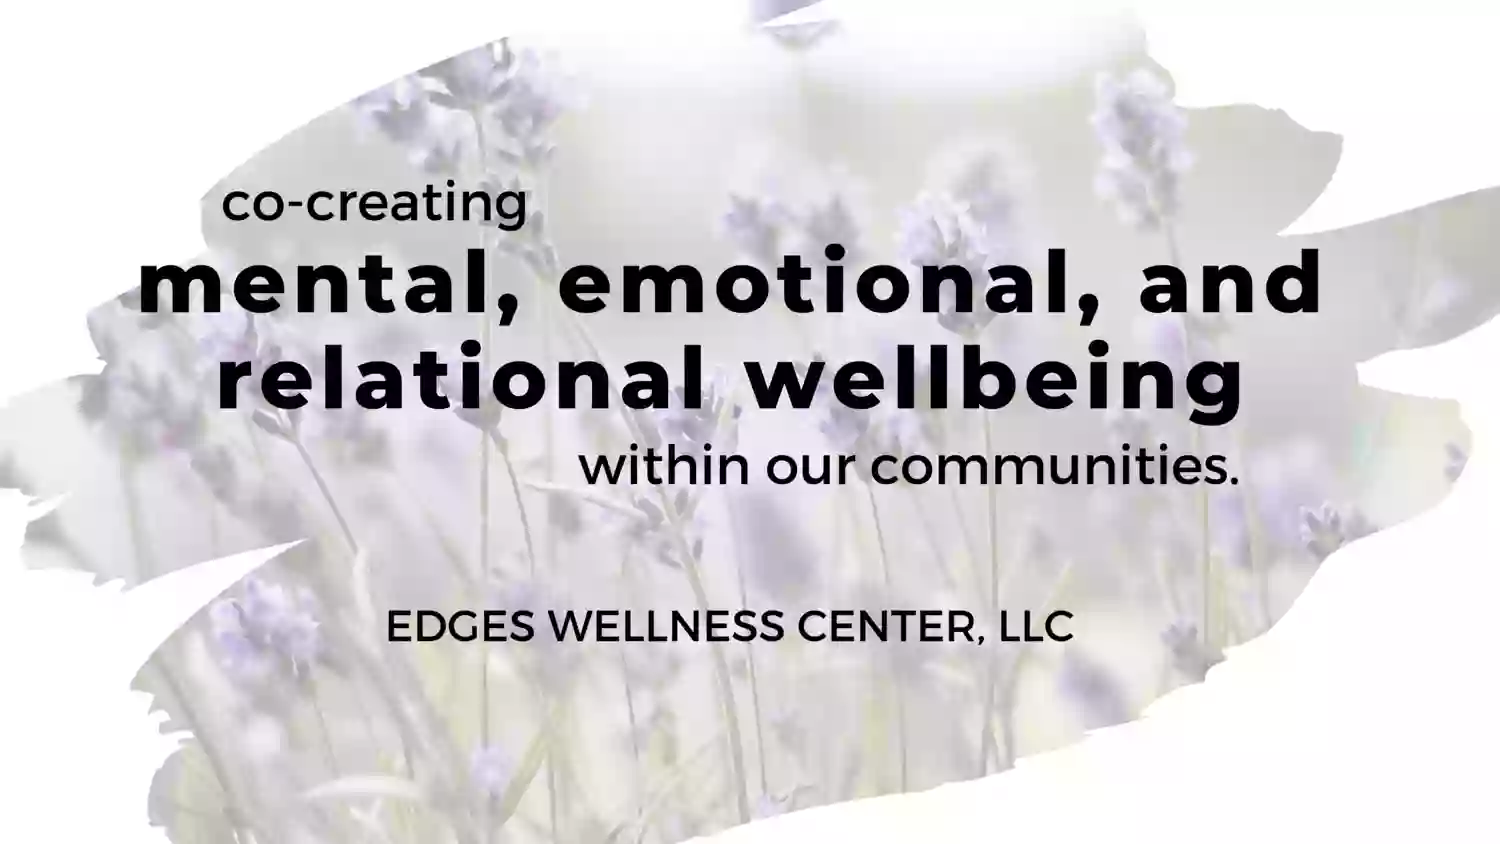 Edges Wellness Center, LLC